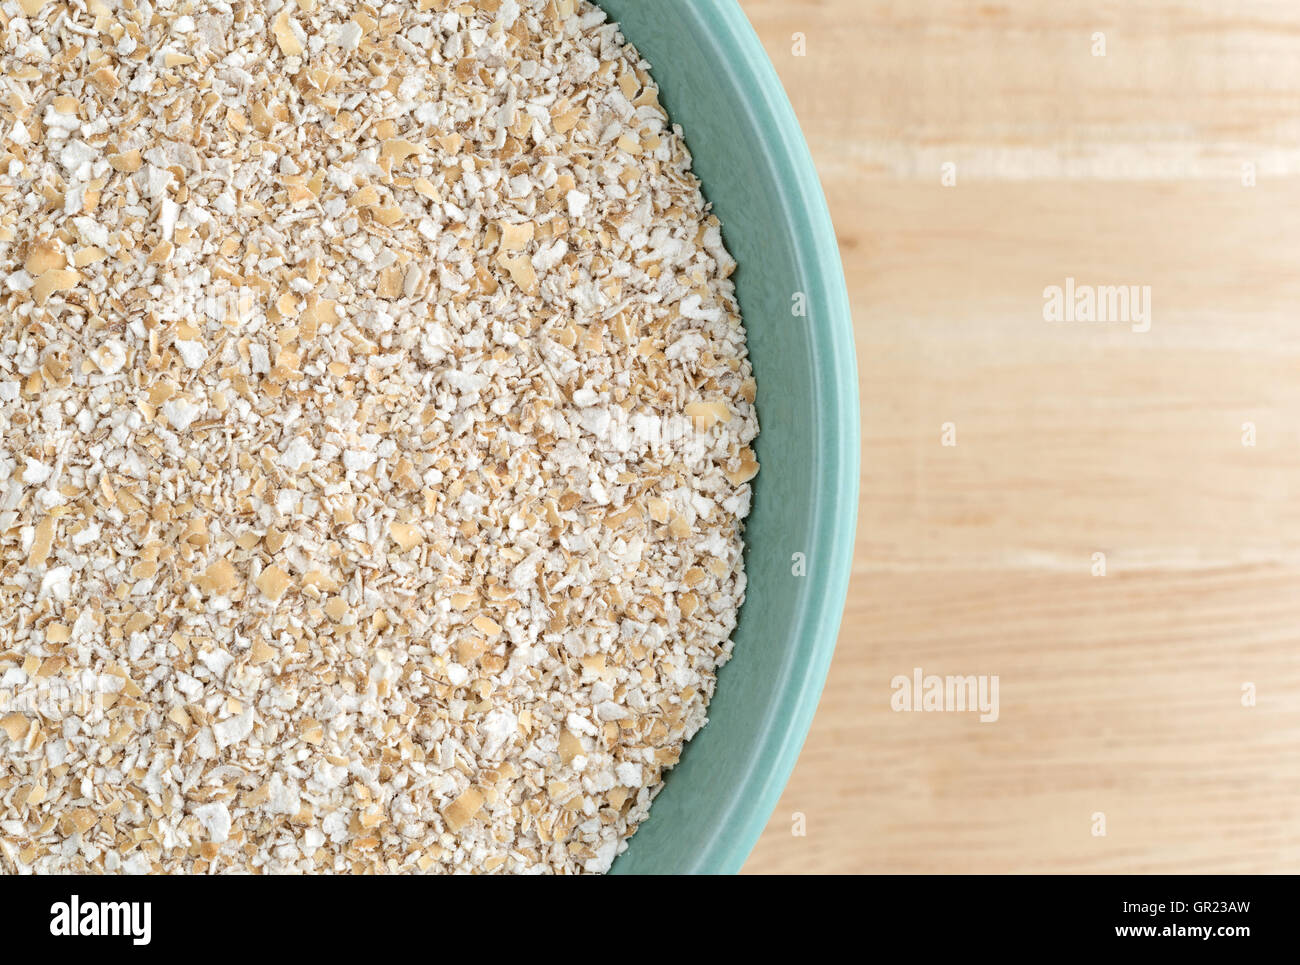 Top Chiudi vista secca di crusca di avena cereale a caldo in un recipiente verde sulla cima di un tavolo di legno. Foto Stock